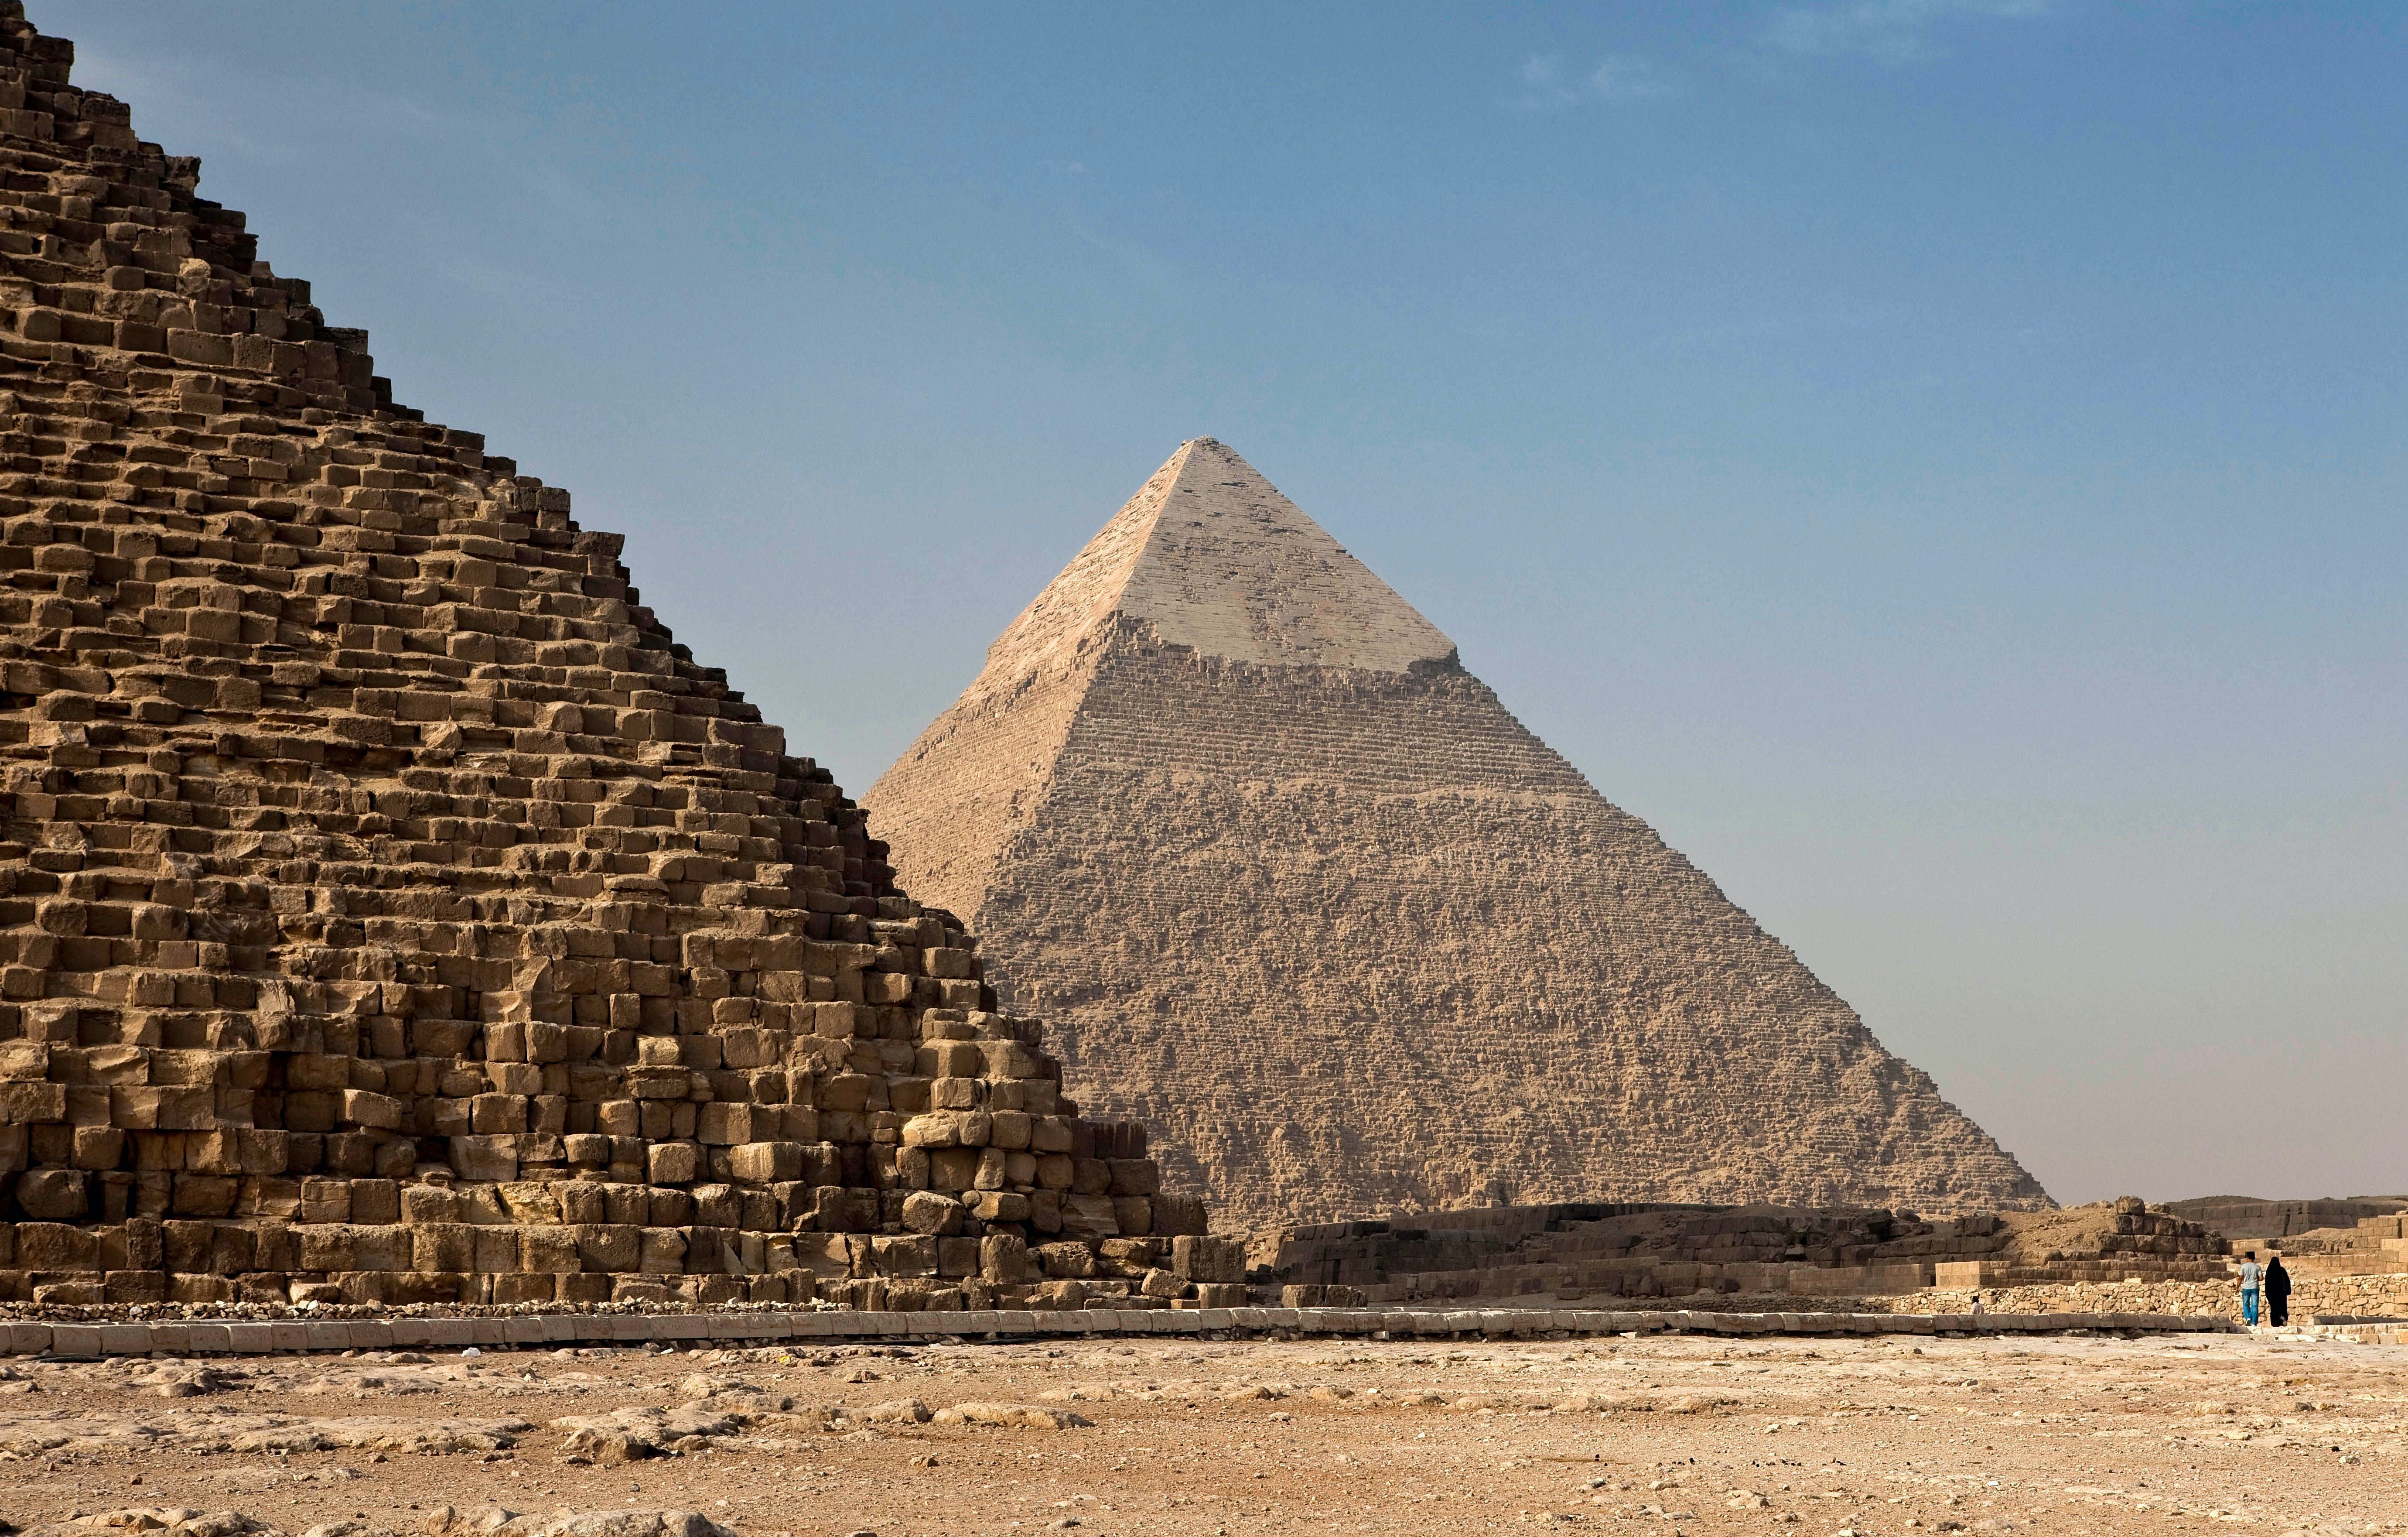 Close image of Pyramids of Egypt